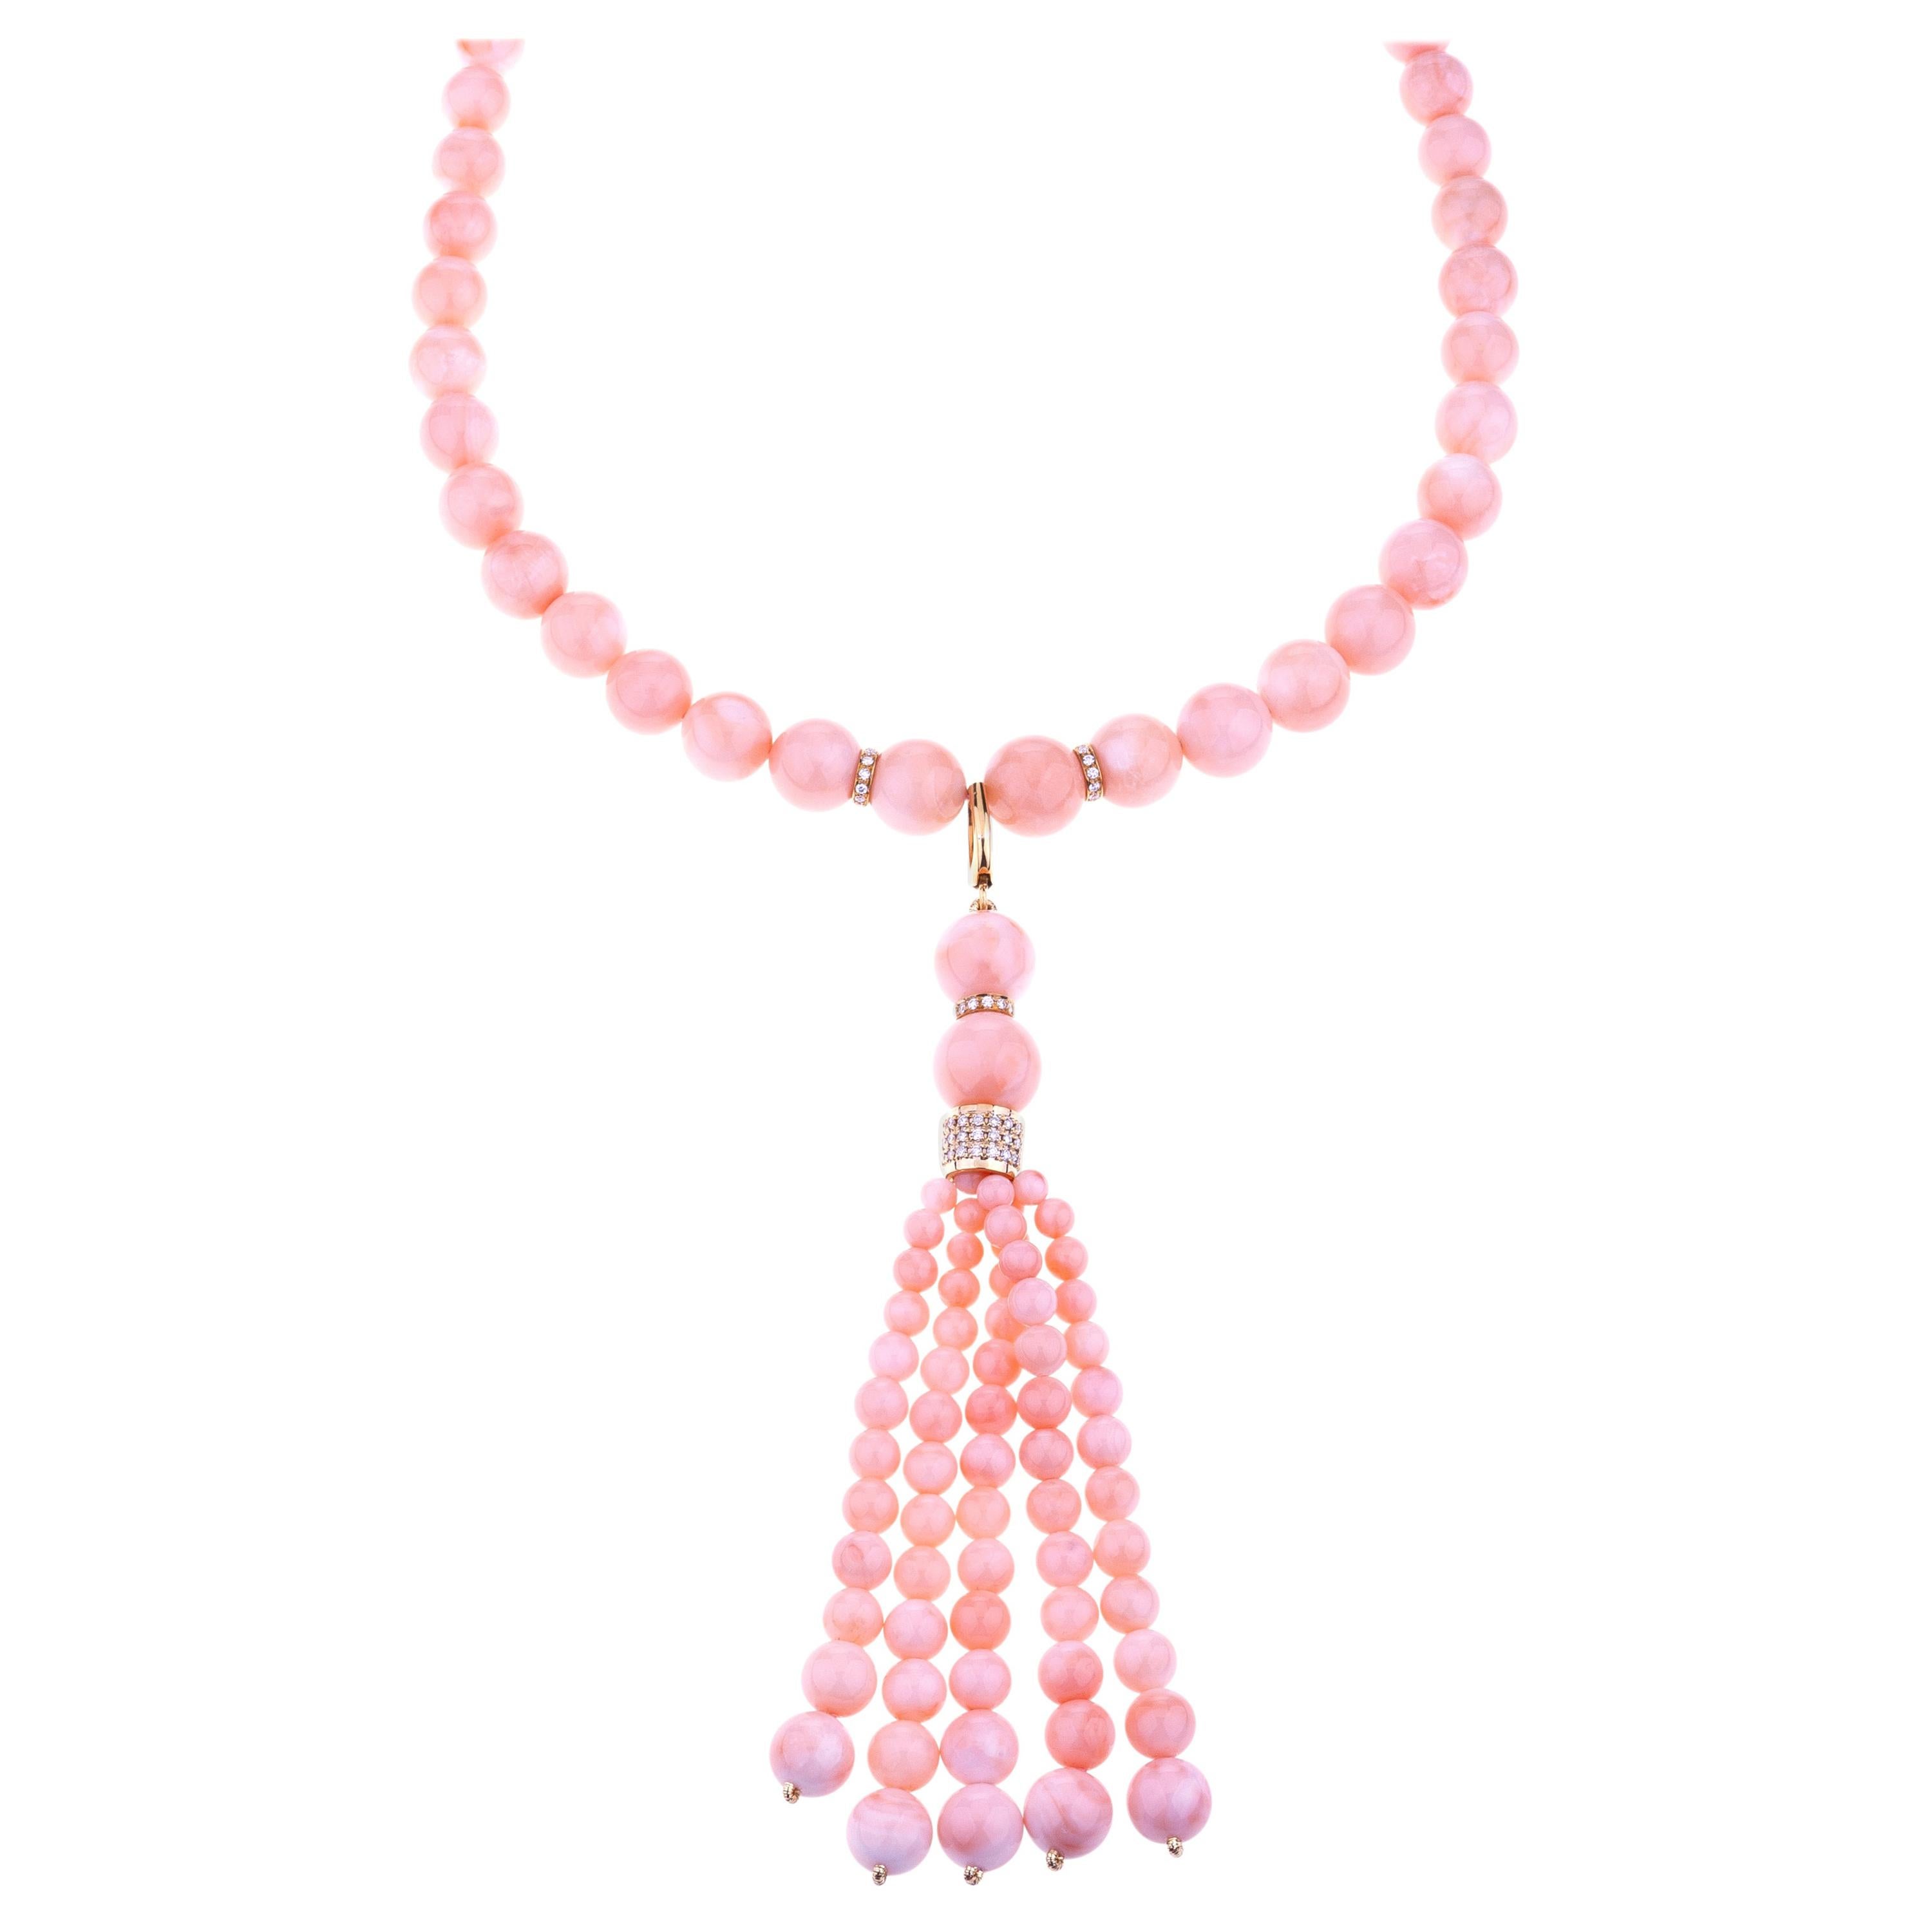 Long collier de perles roses en corail peau d'ange avec 5 fils craquelés